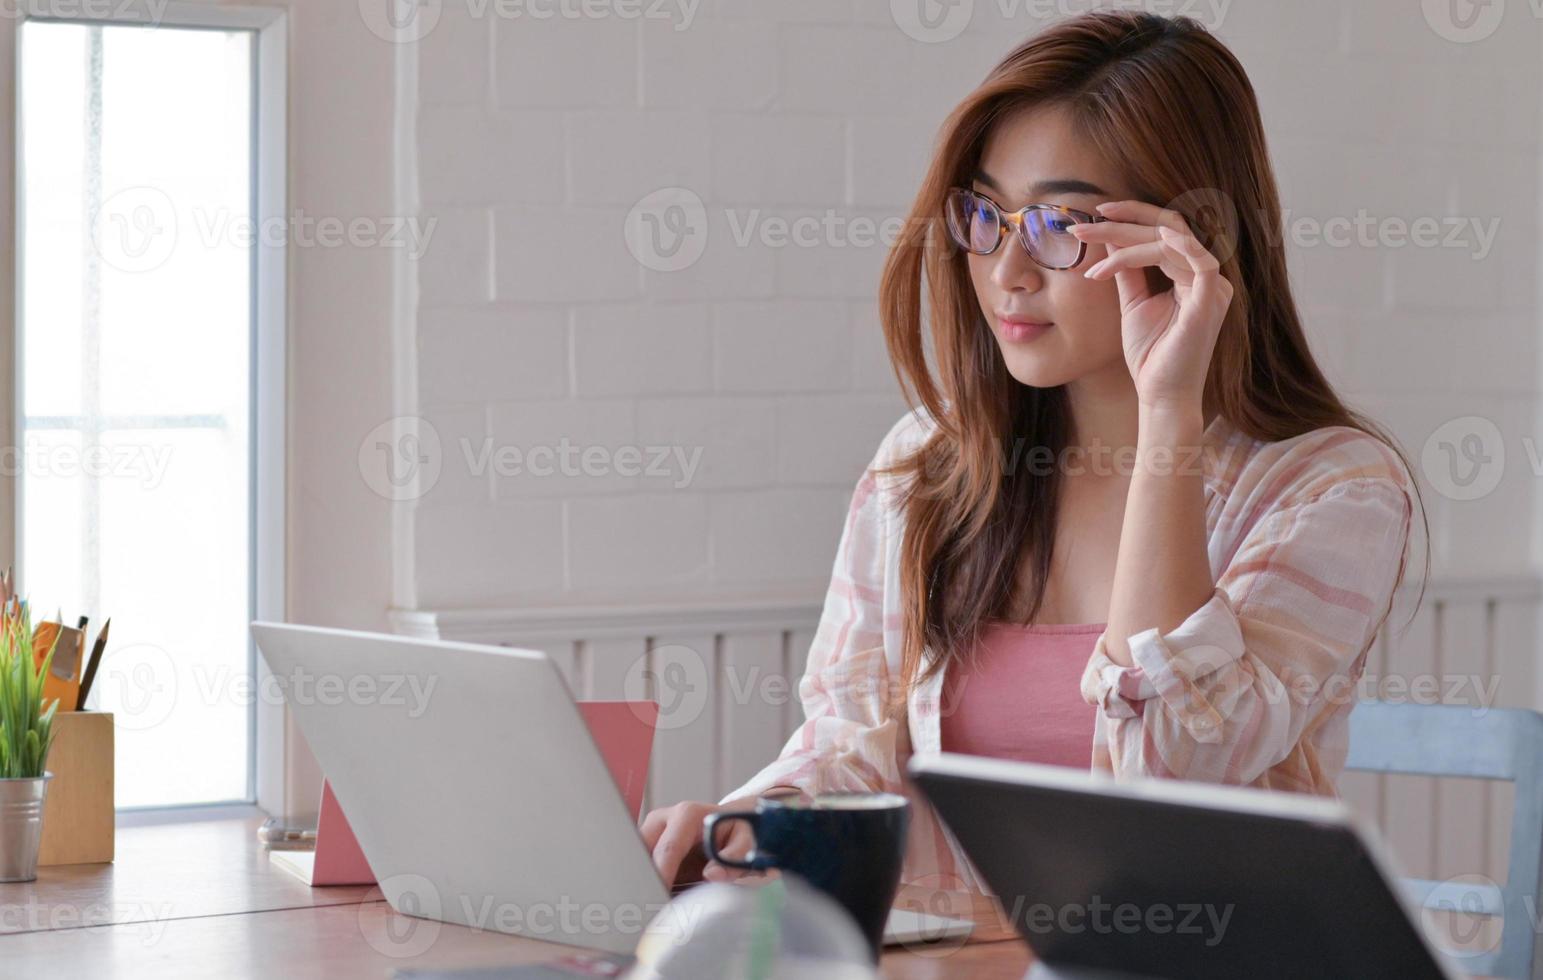 Toma recortada de estudiante adolescente que está estudiando en línea en casa con una computadora portátil. foto